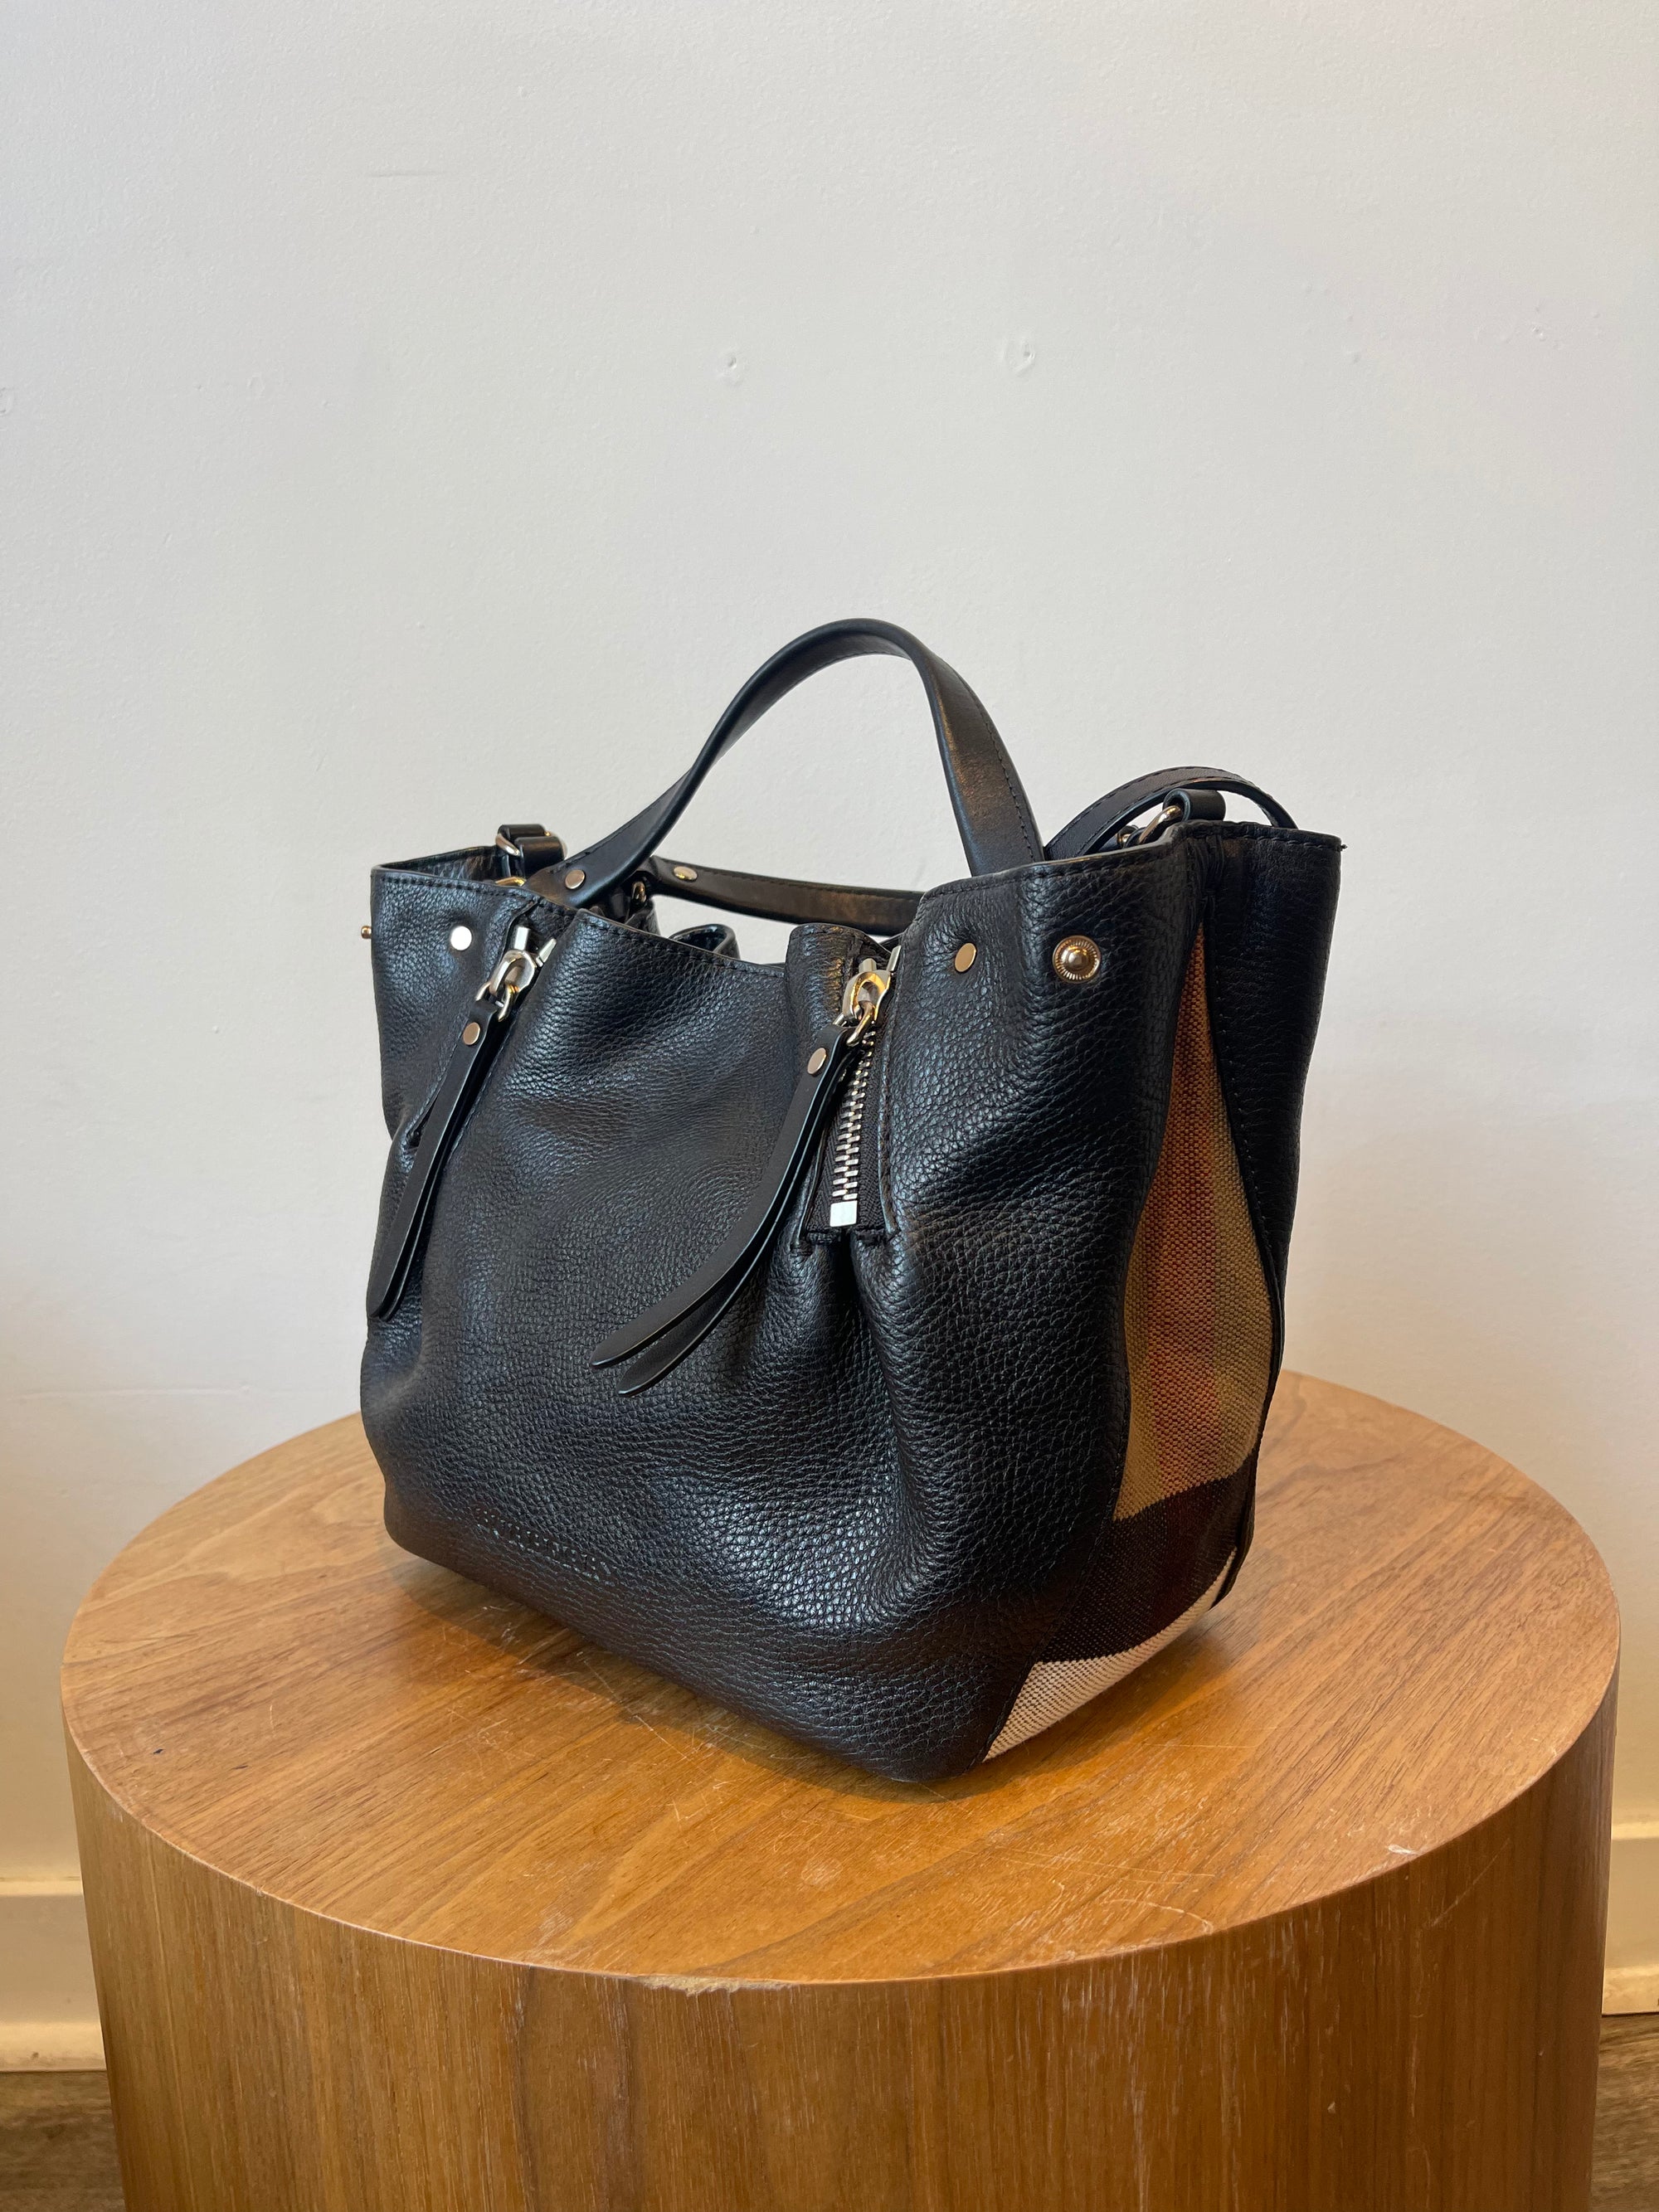 Burberry Black Handbag with Nova Check